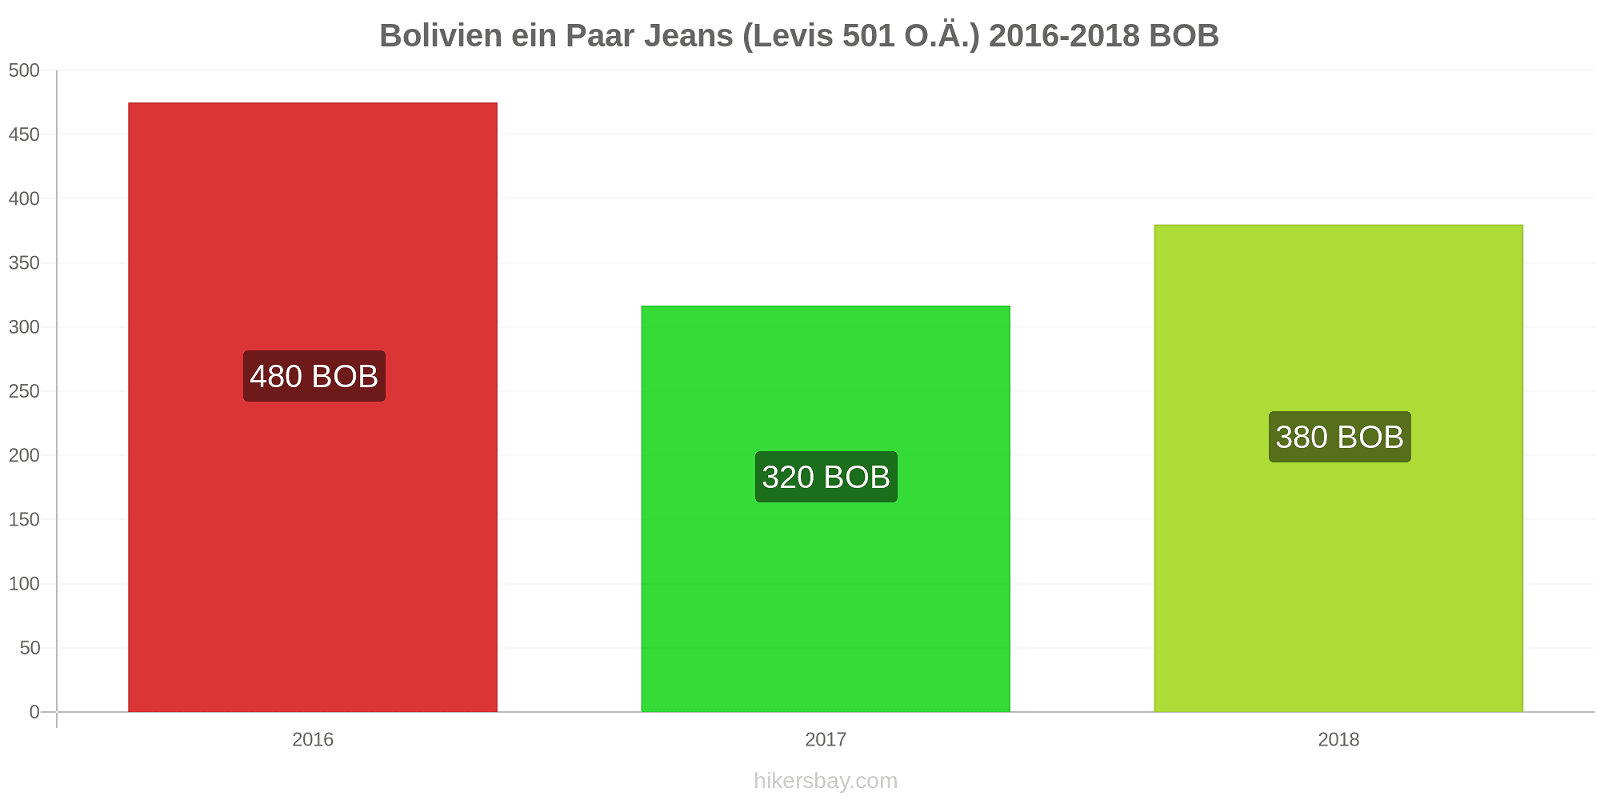 Bolivien Preisänderungen 1 Paar Jeans (Levis 501 oder ähnlich) hikersbay.com